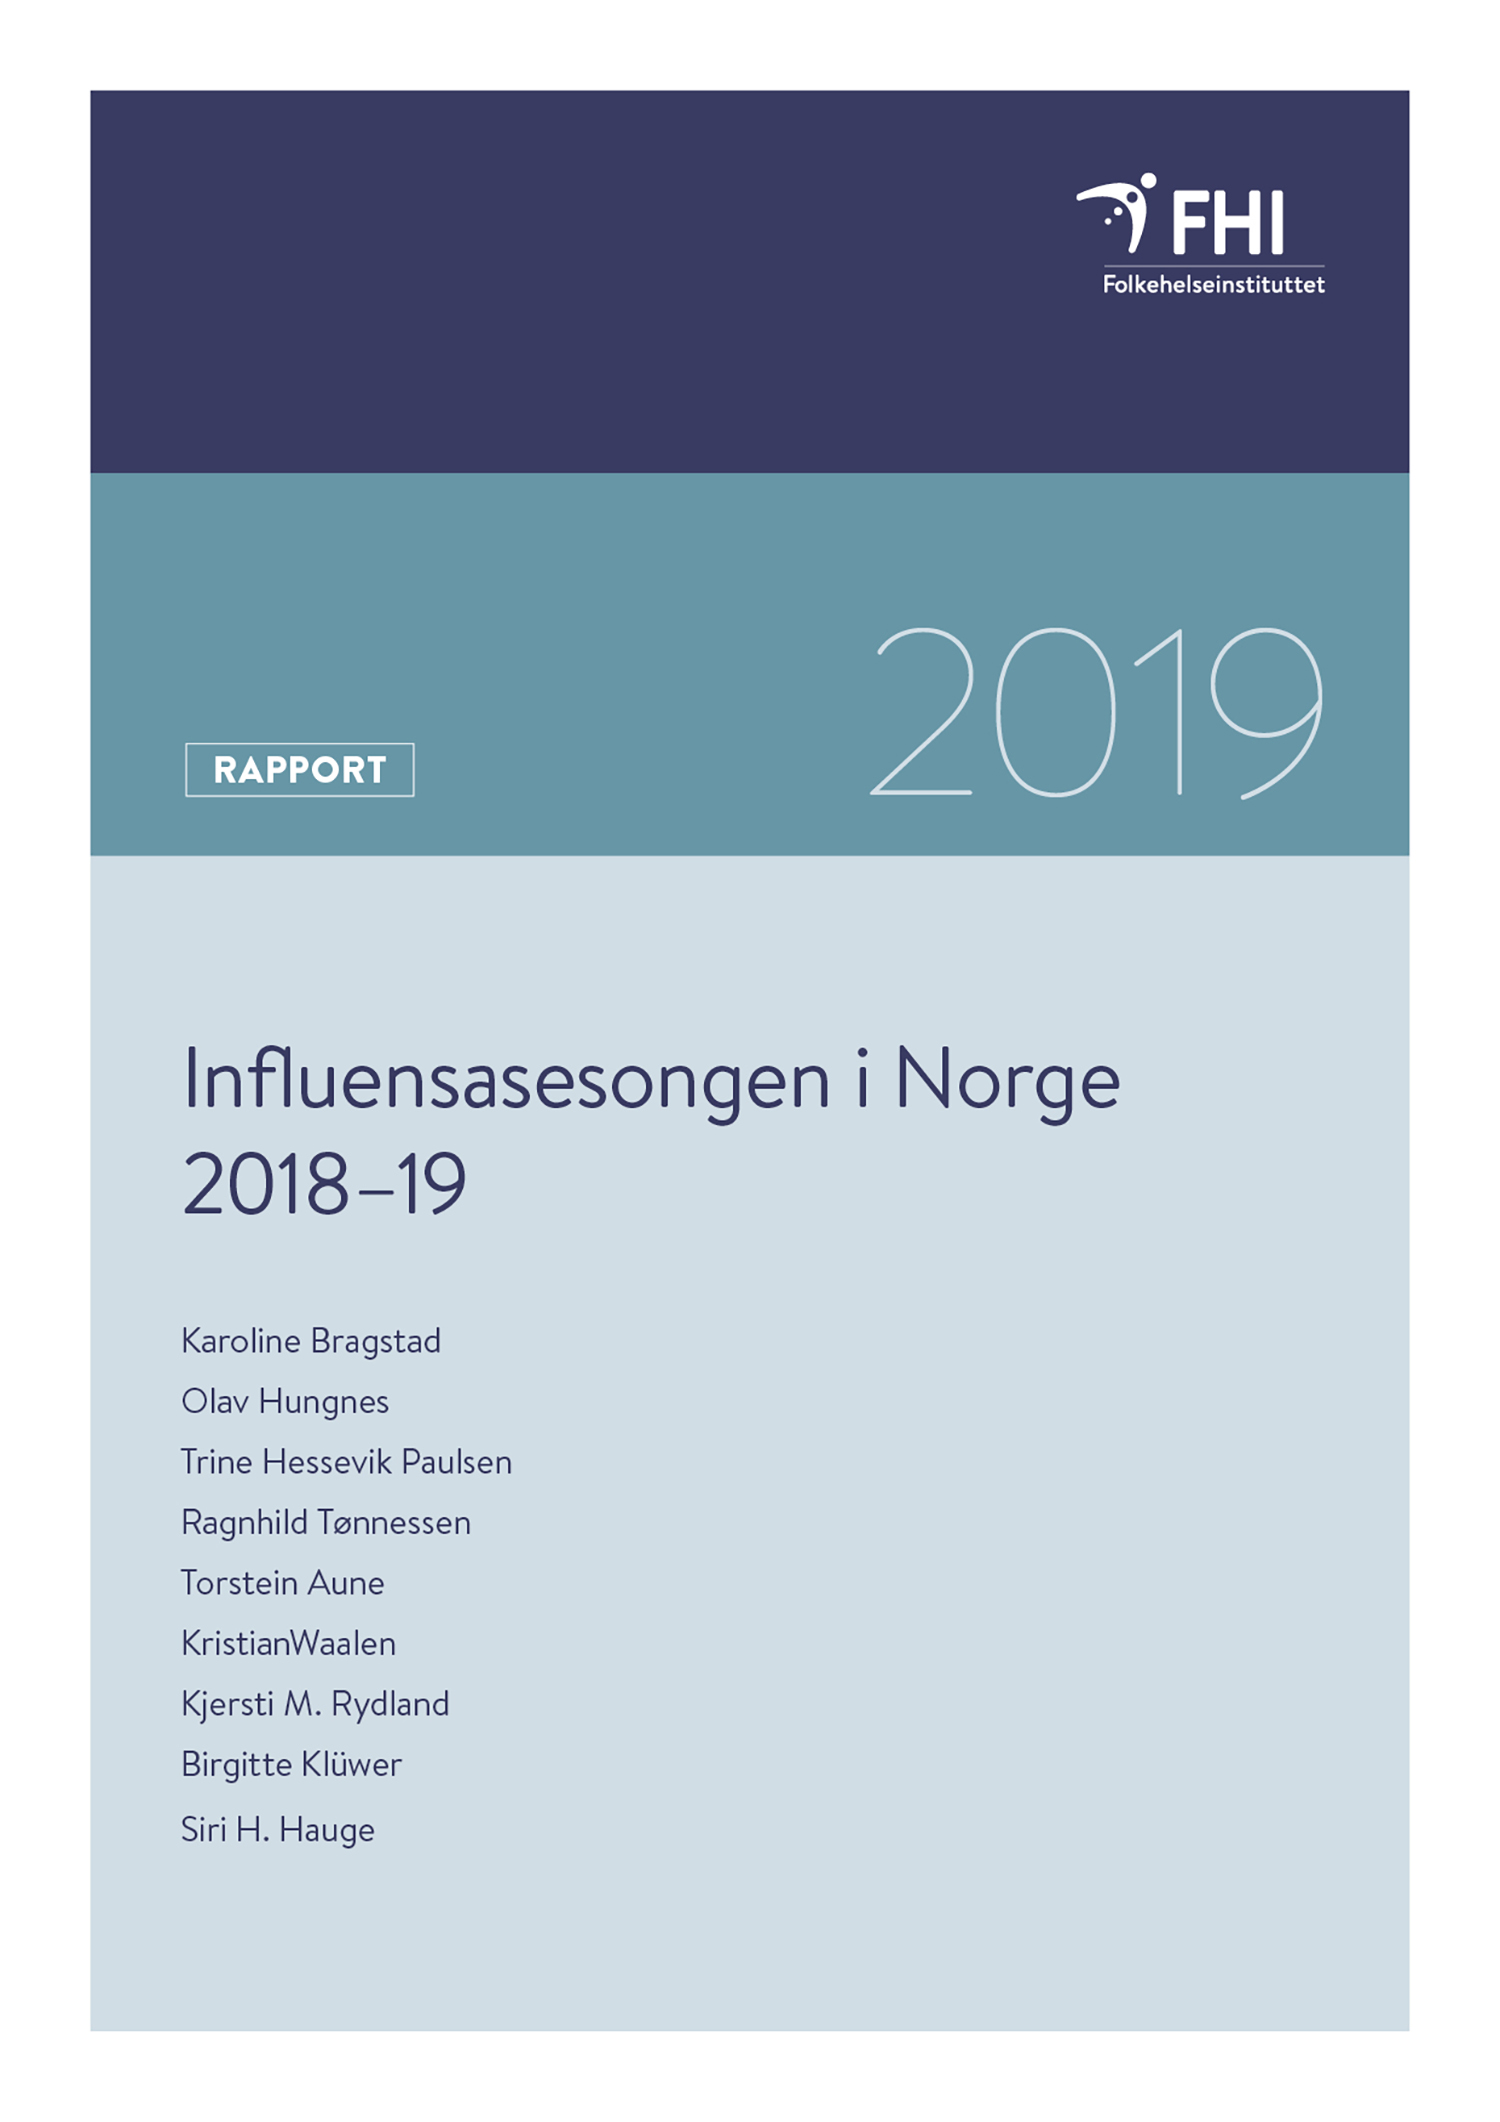 Influensasesongen 2018-19 omslag.jpg